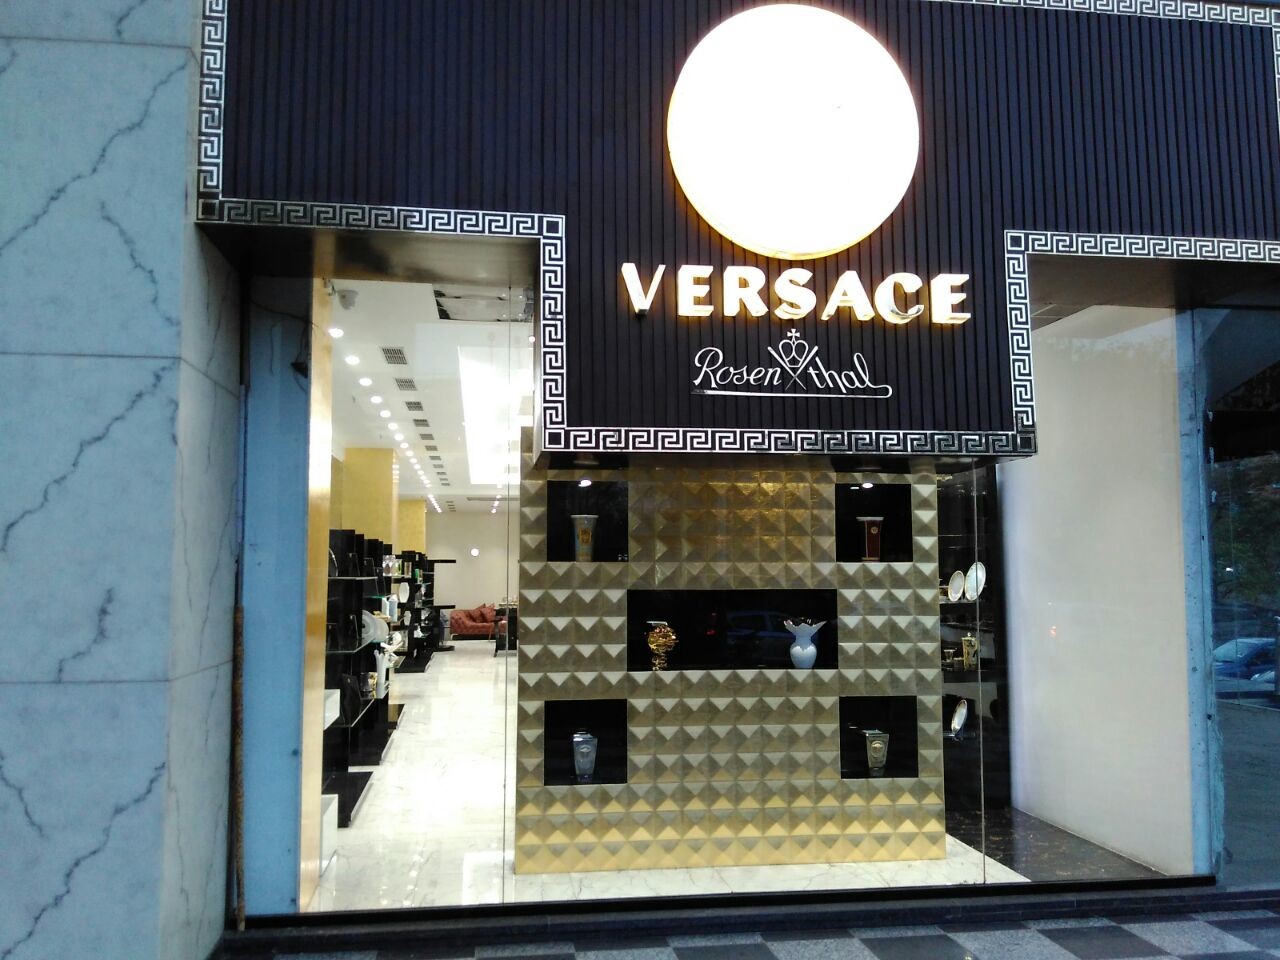 Versace Rosenthal Premium Store, Netaji Subhash Place, Delhi